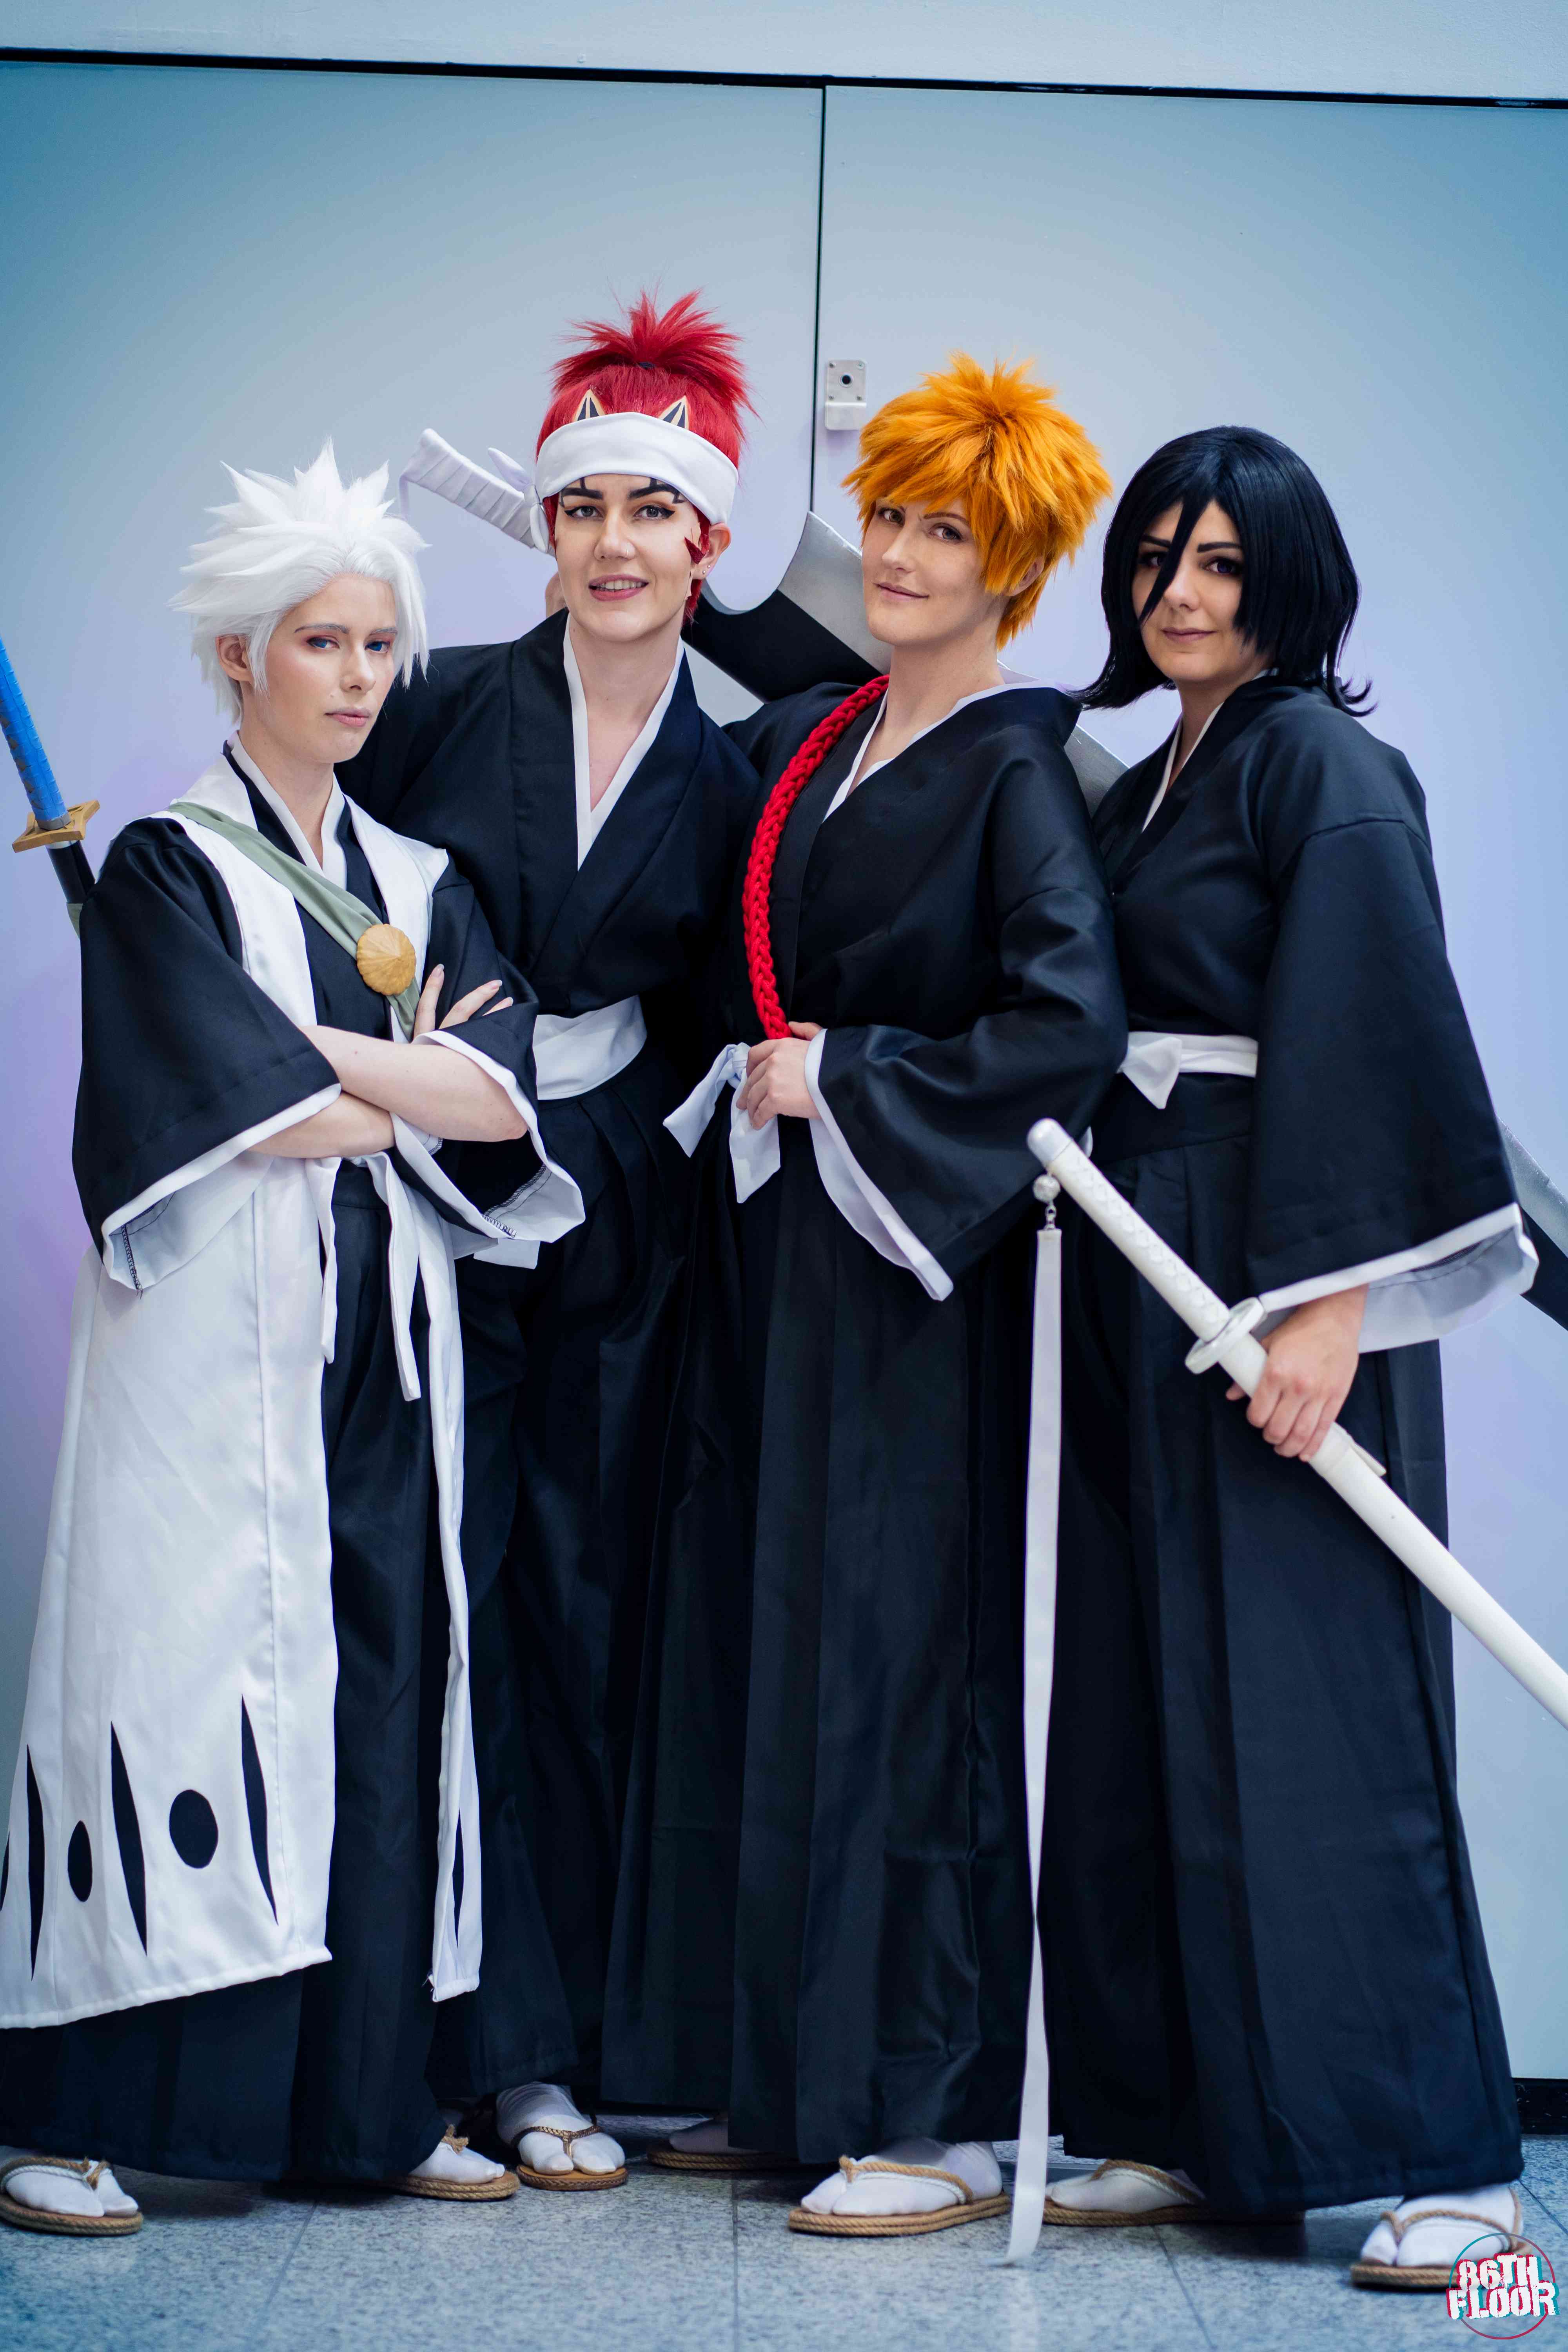 Hitsugaya, Ichigo, Renji & Rukia from Bleach - anime cosplayers from MCM London 2022